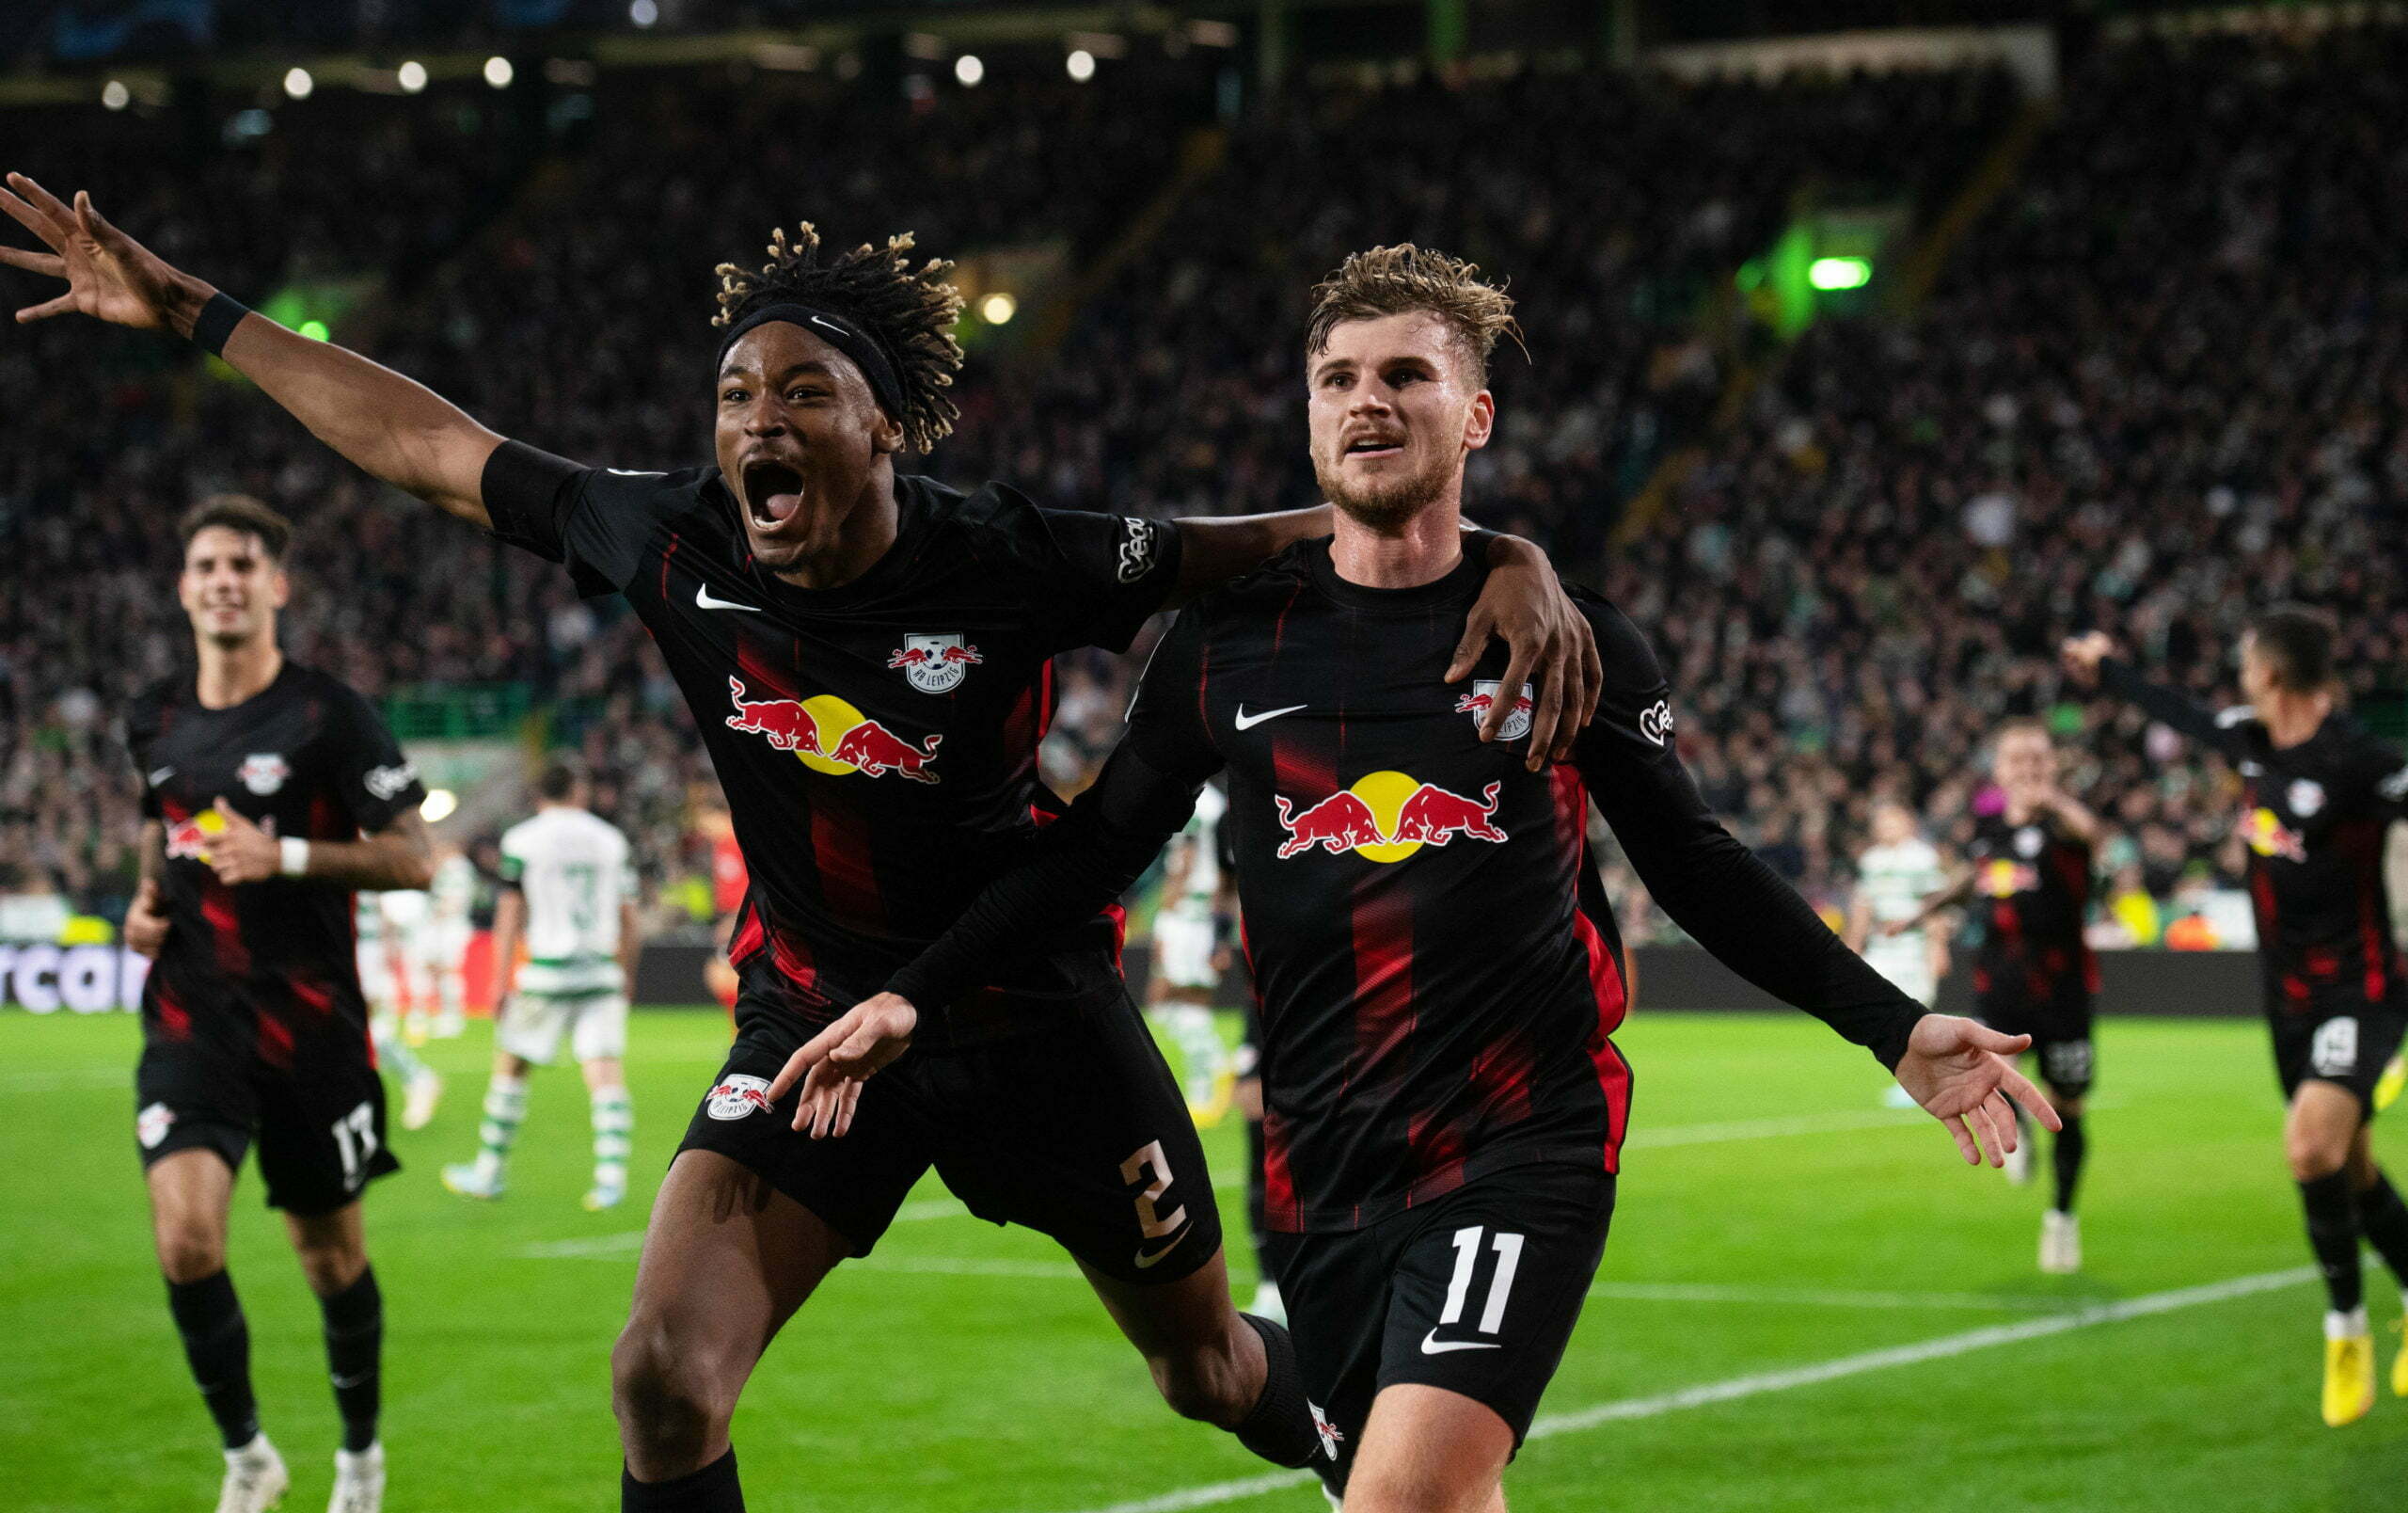 Celtic 0-2 RB Leipzig – Full Time Report